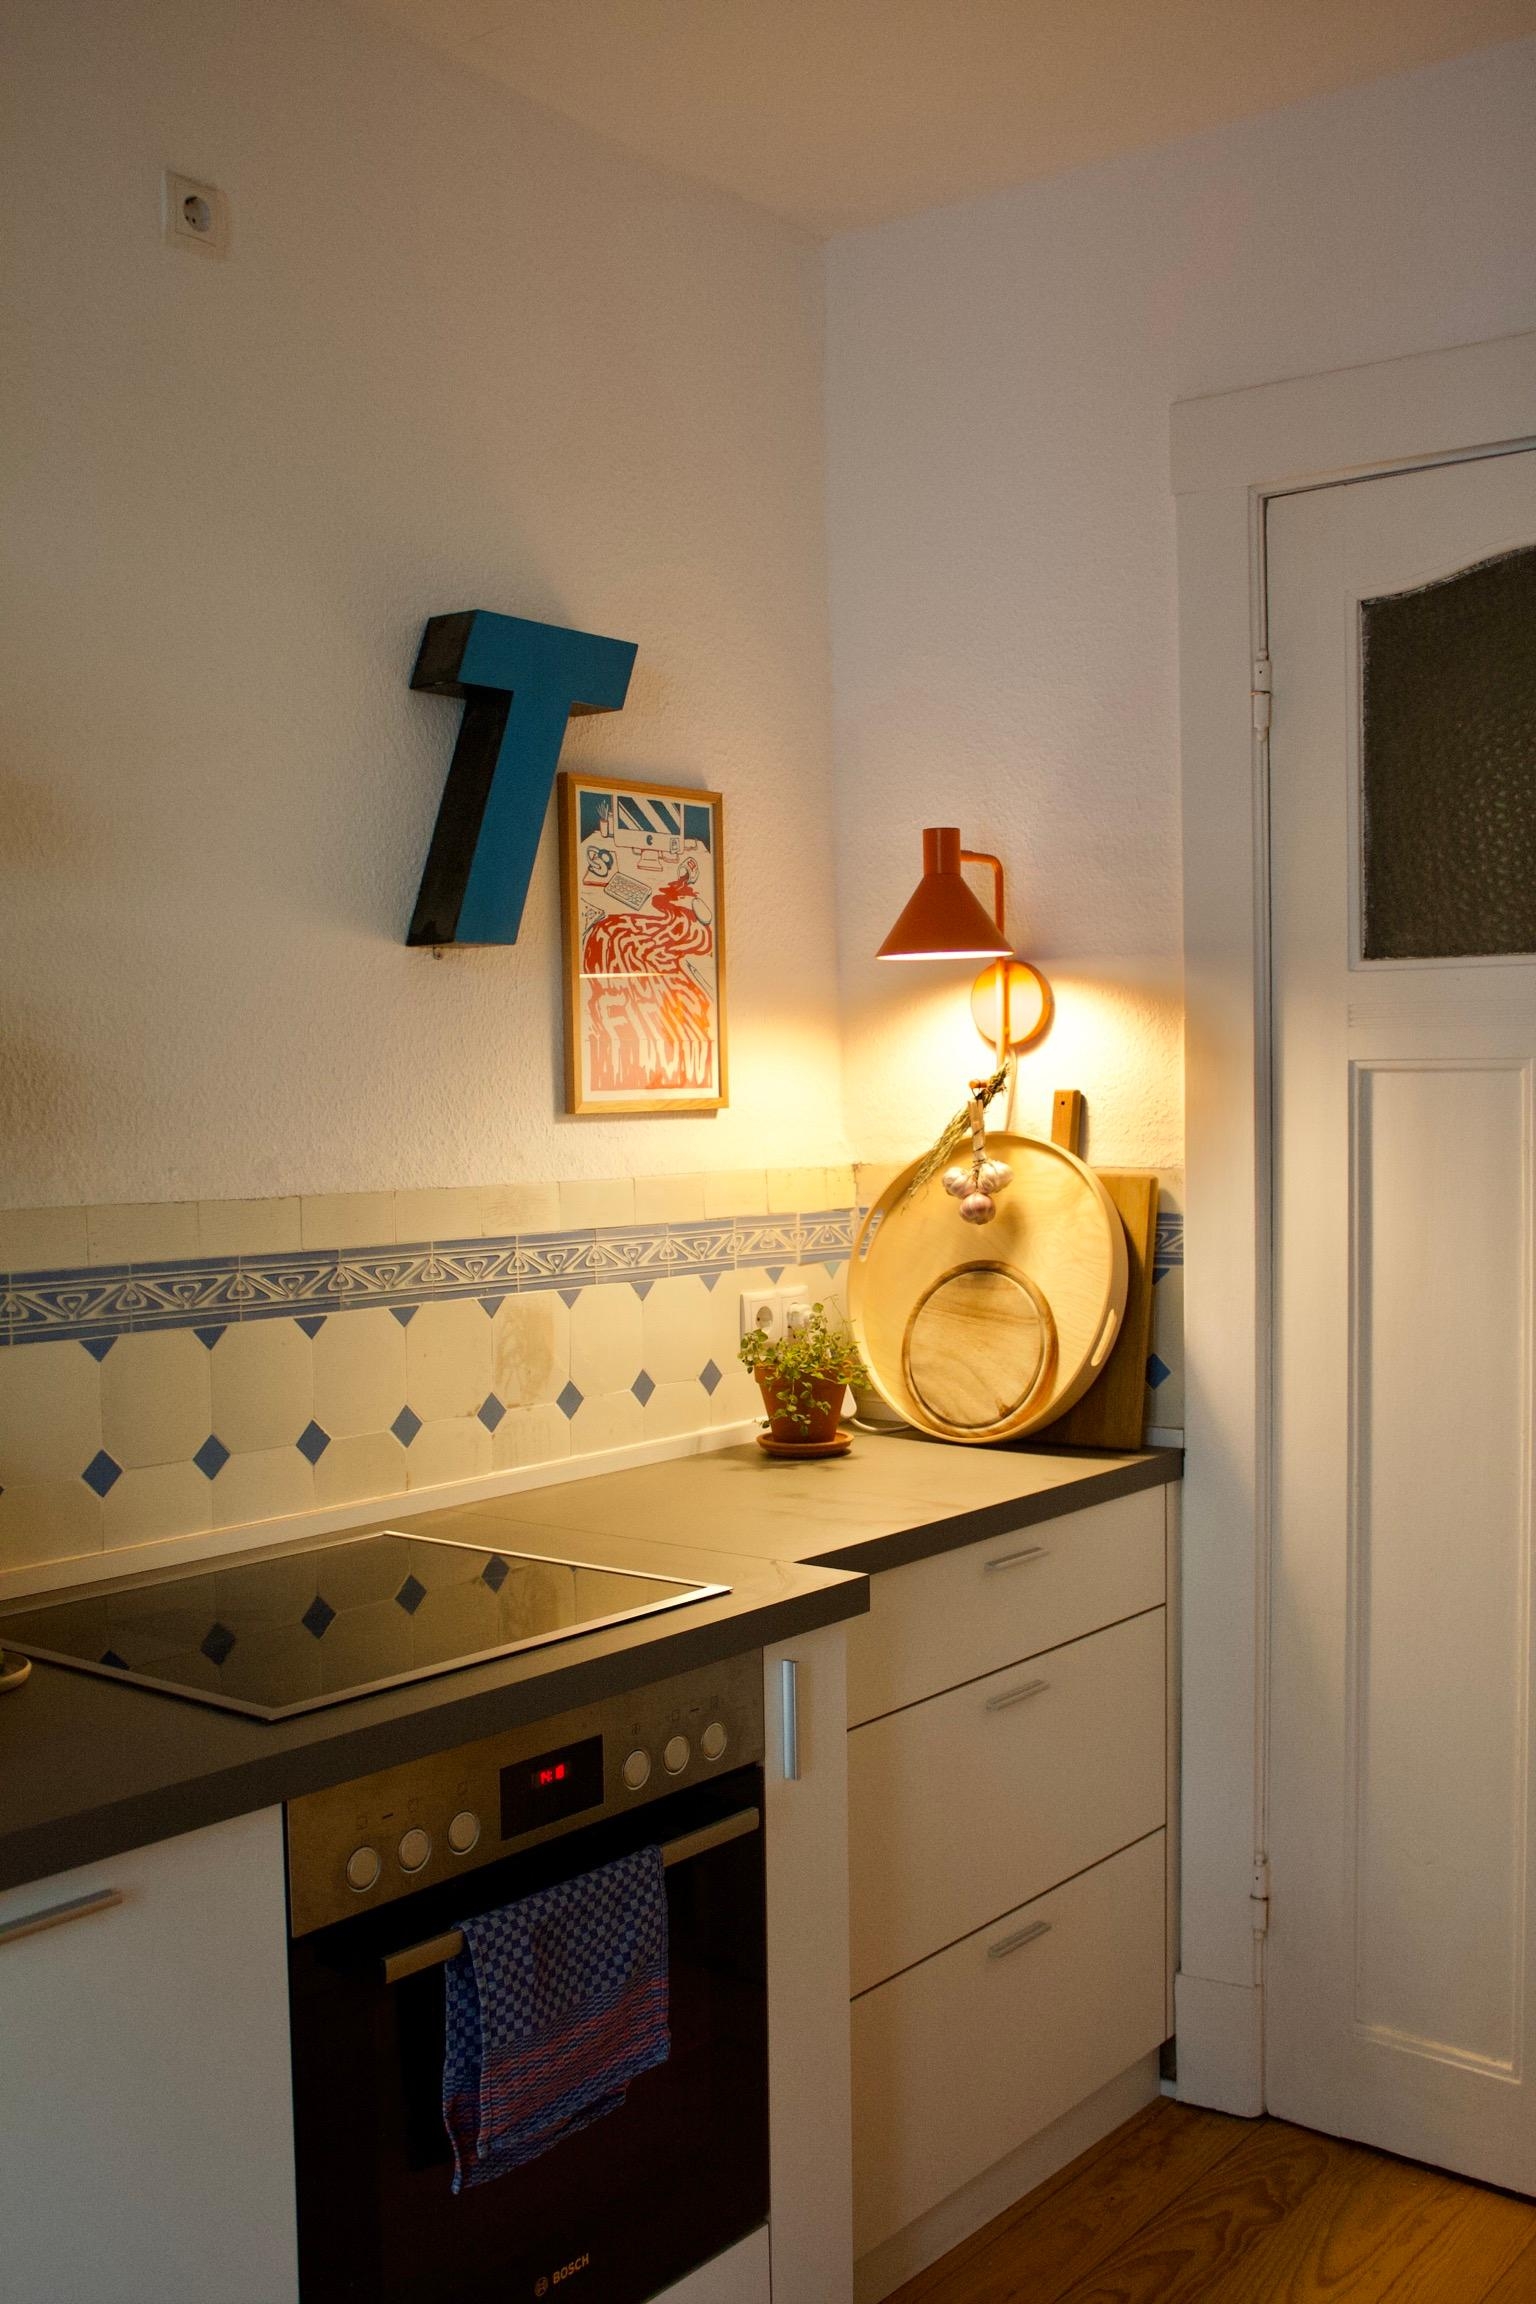 #küche #lampe #altbaufliesen #küchendesign #kleineküche